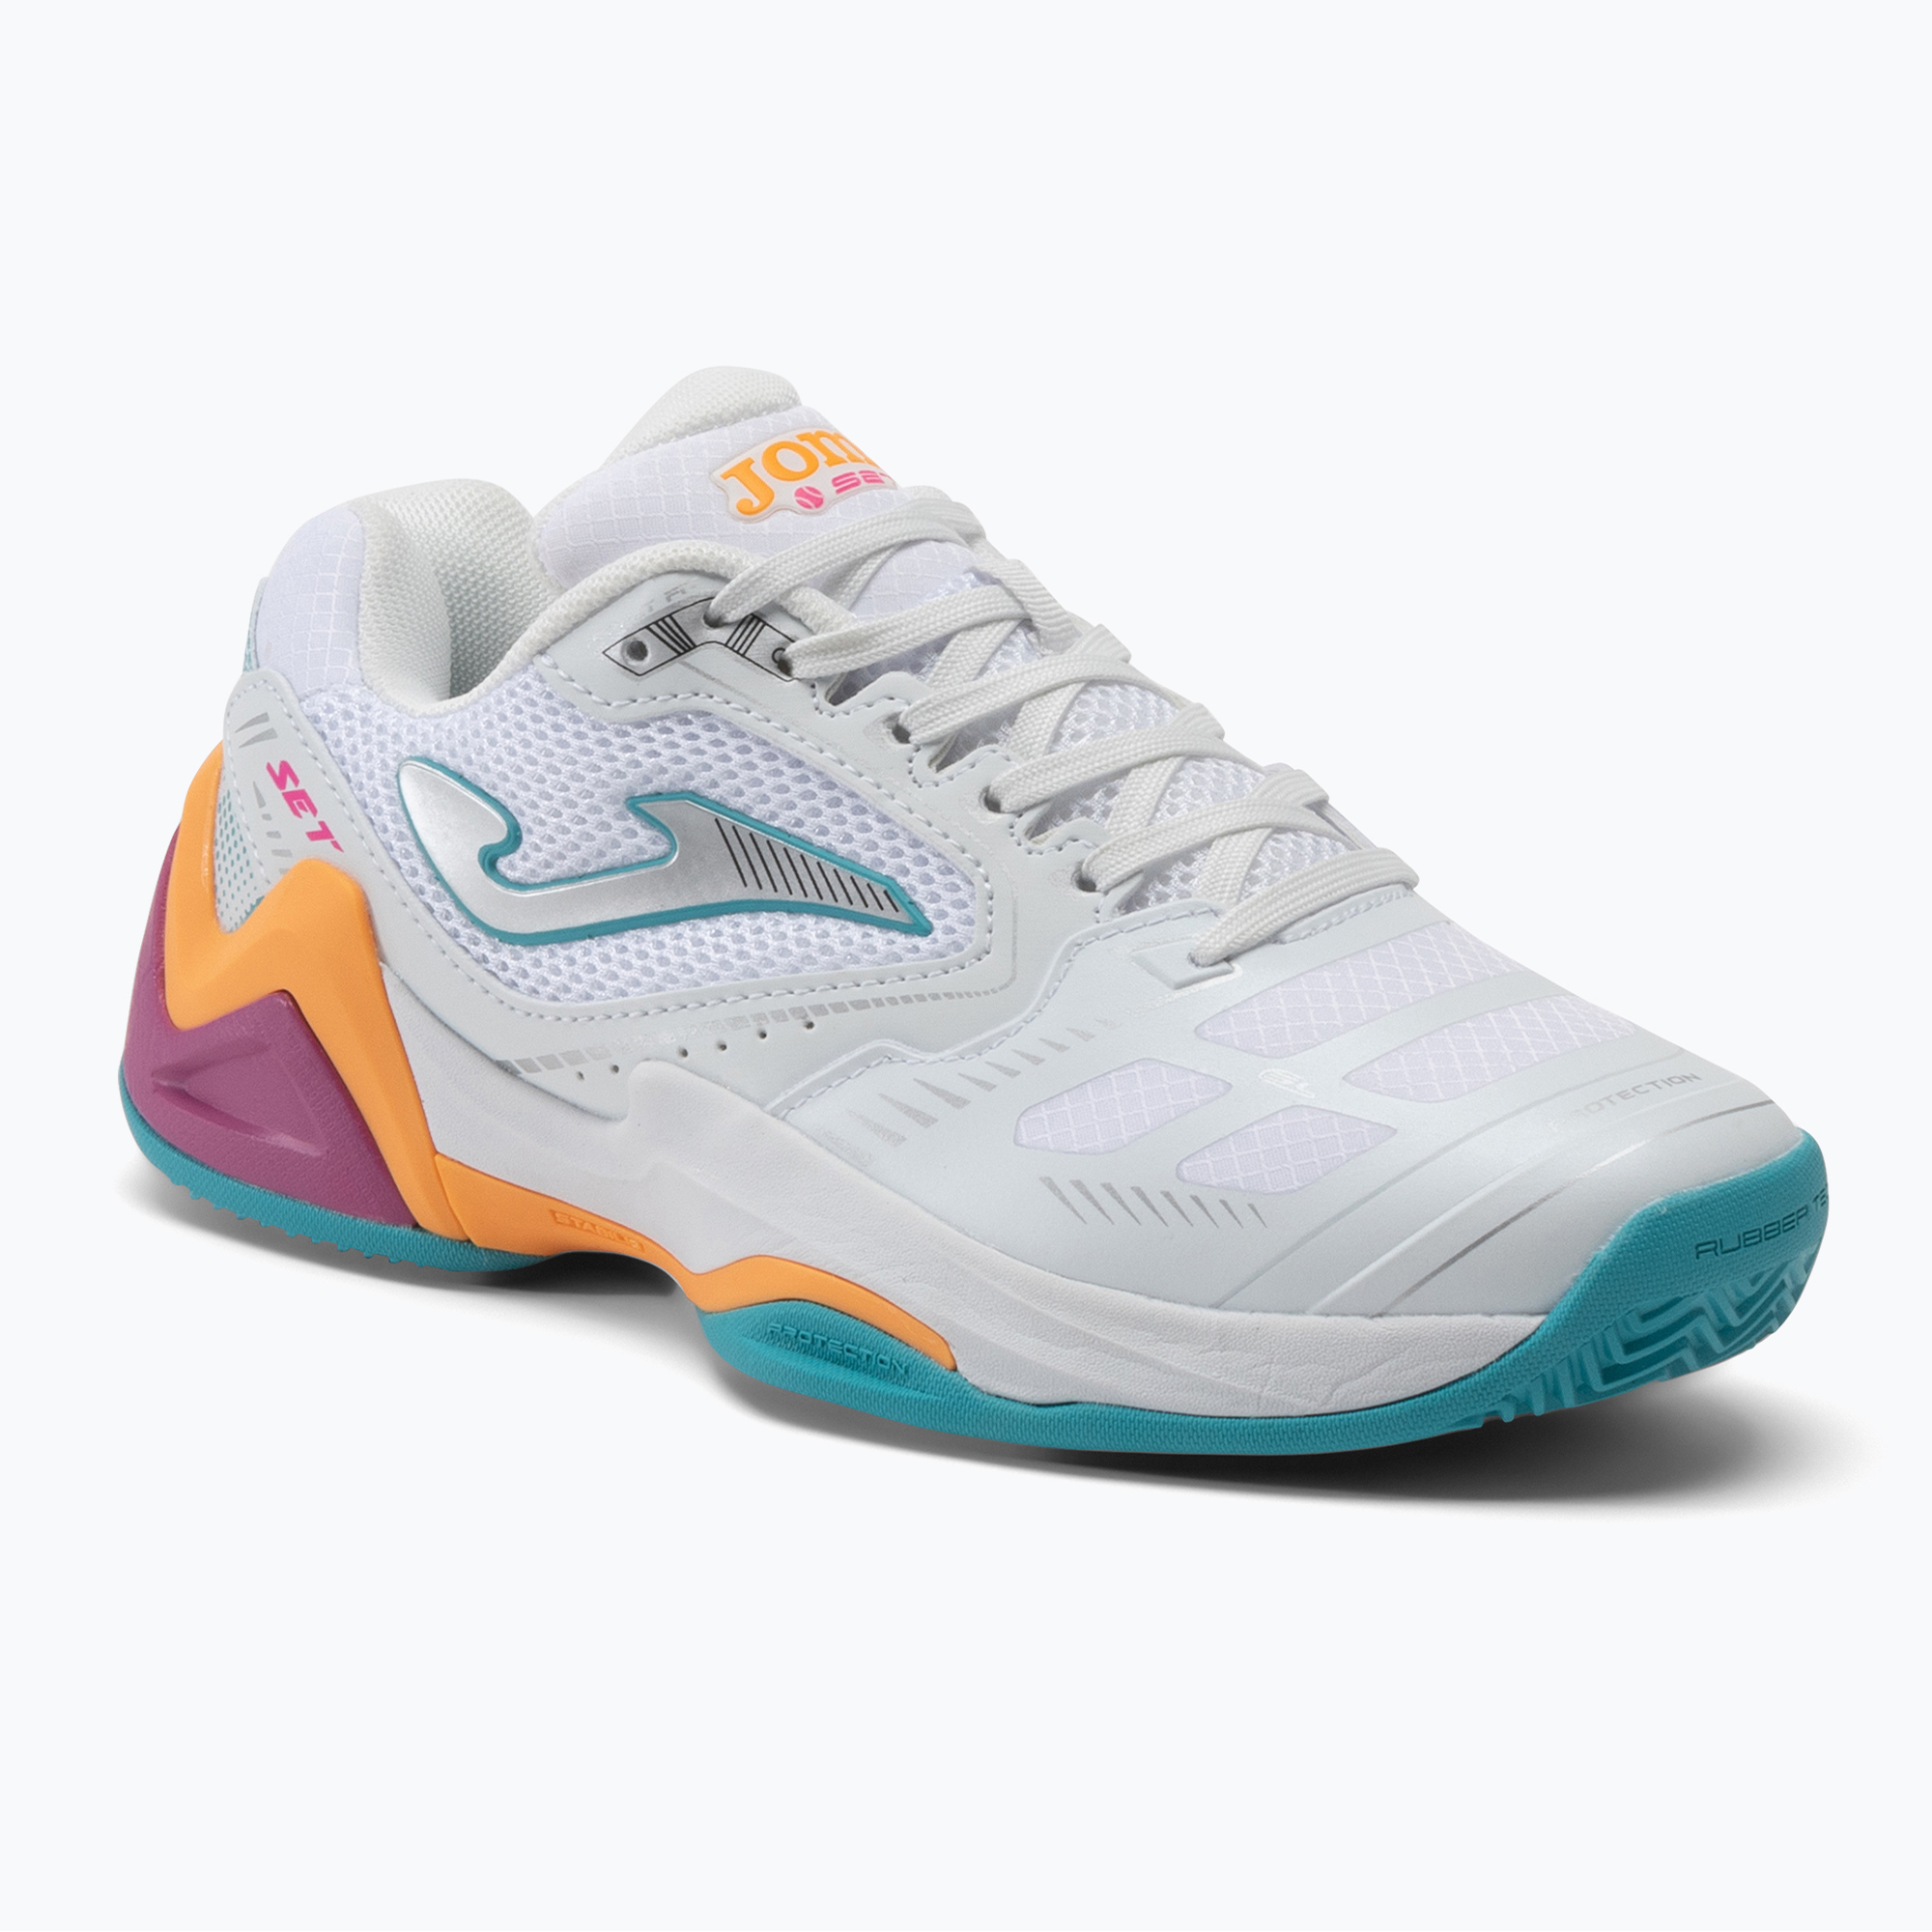 Pantofi de tenis pentru femei Joma Set Lady alb/portocaliu